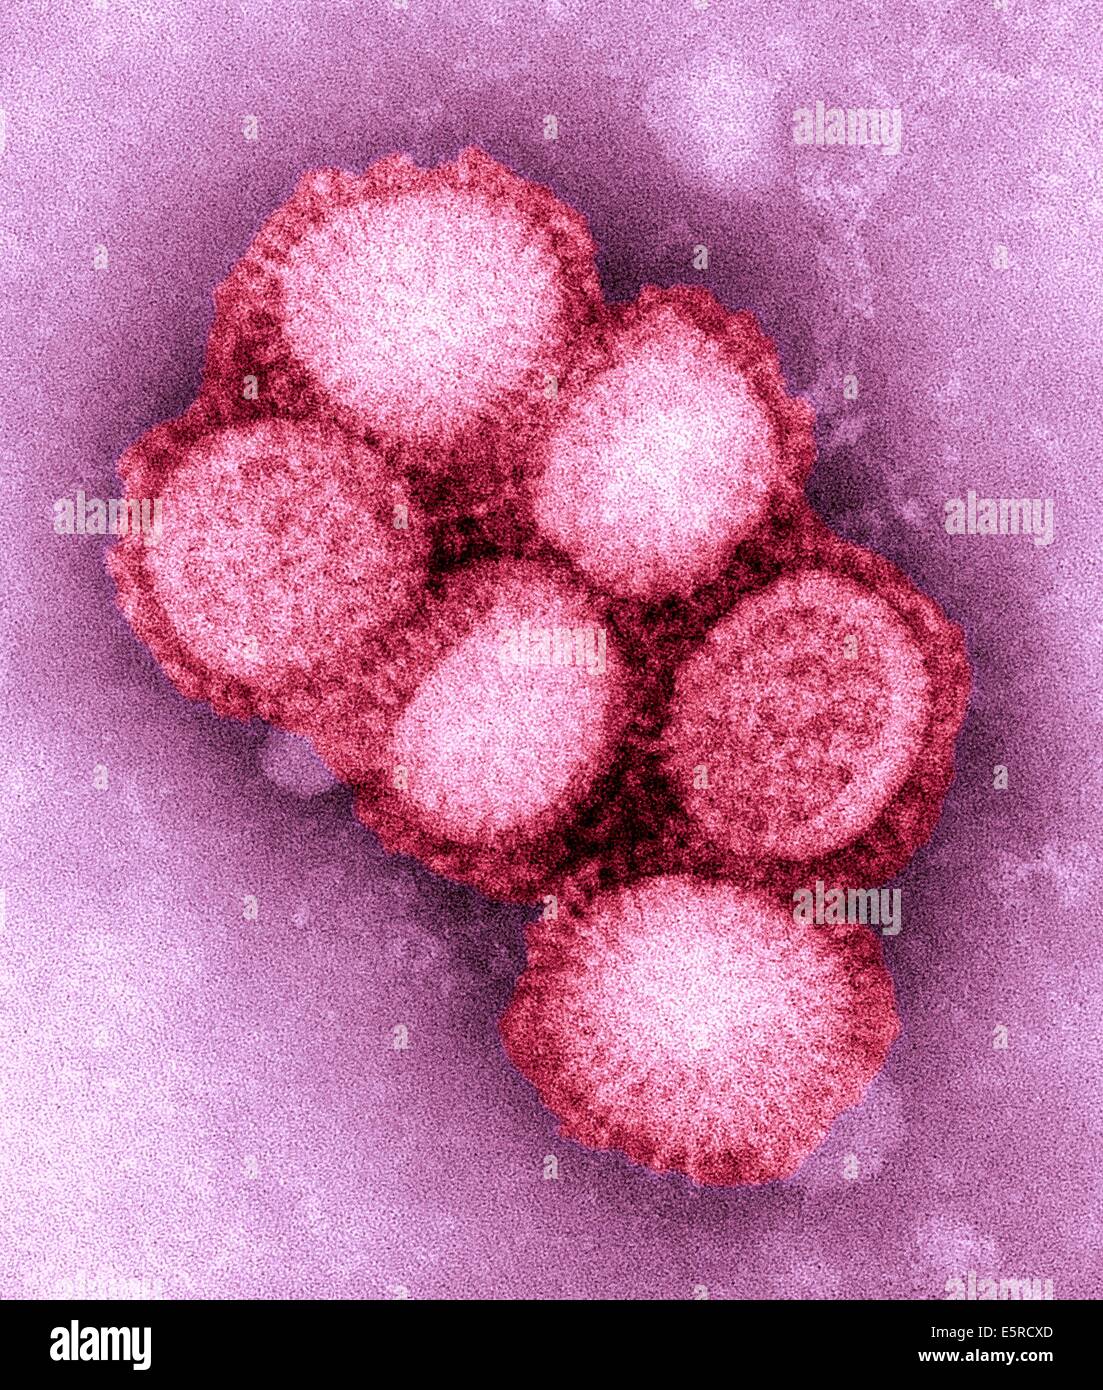 Schweine-Grippe (Schweinegrippe) ist eine Erkrankung der Atemwege von Schweinen verursacht durch Influenza-Virus Typ A, die regelmäßig Ausbrüche verursacht Stockfoto